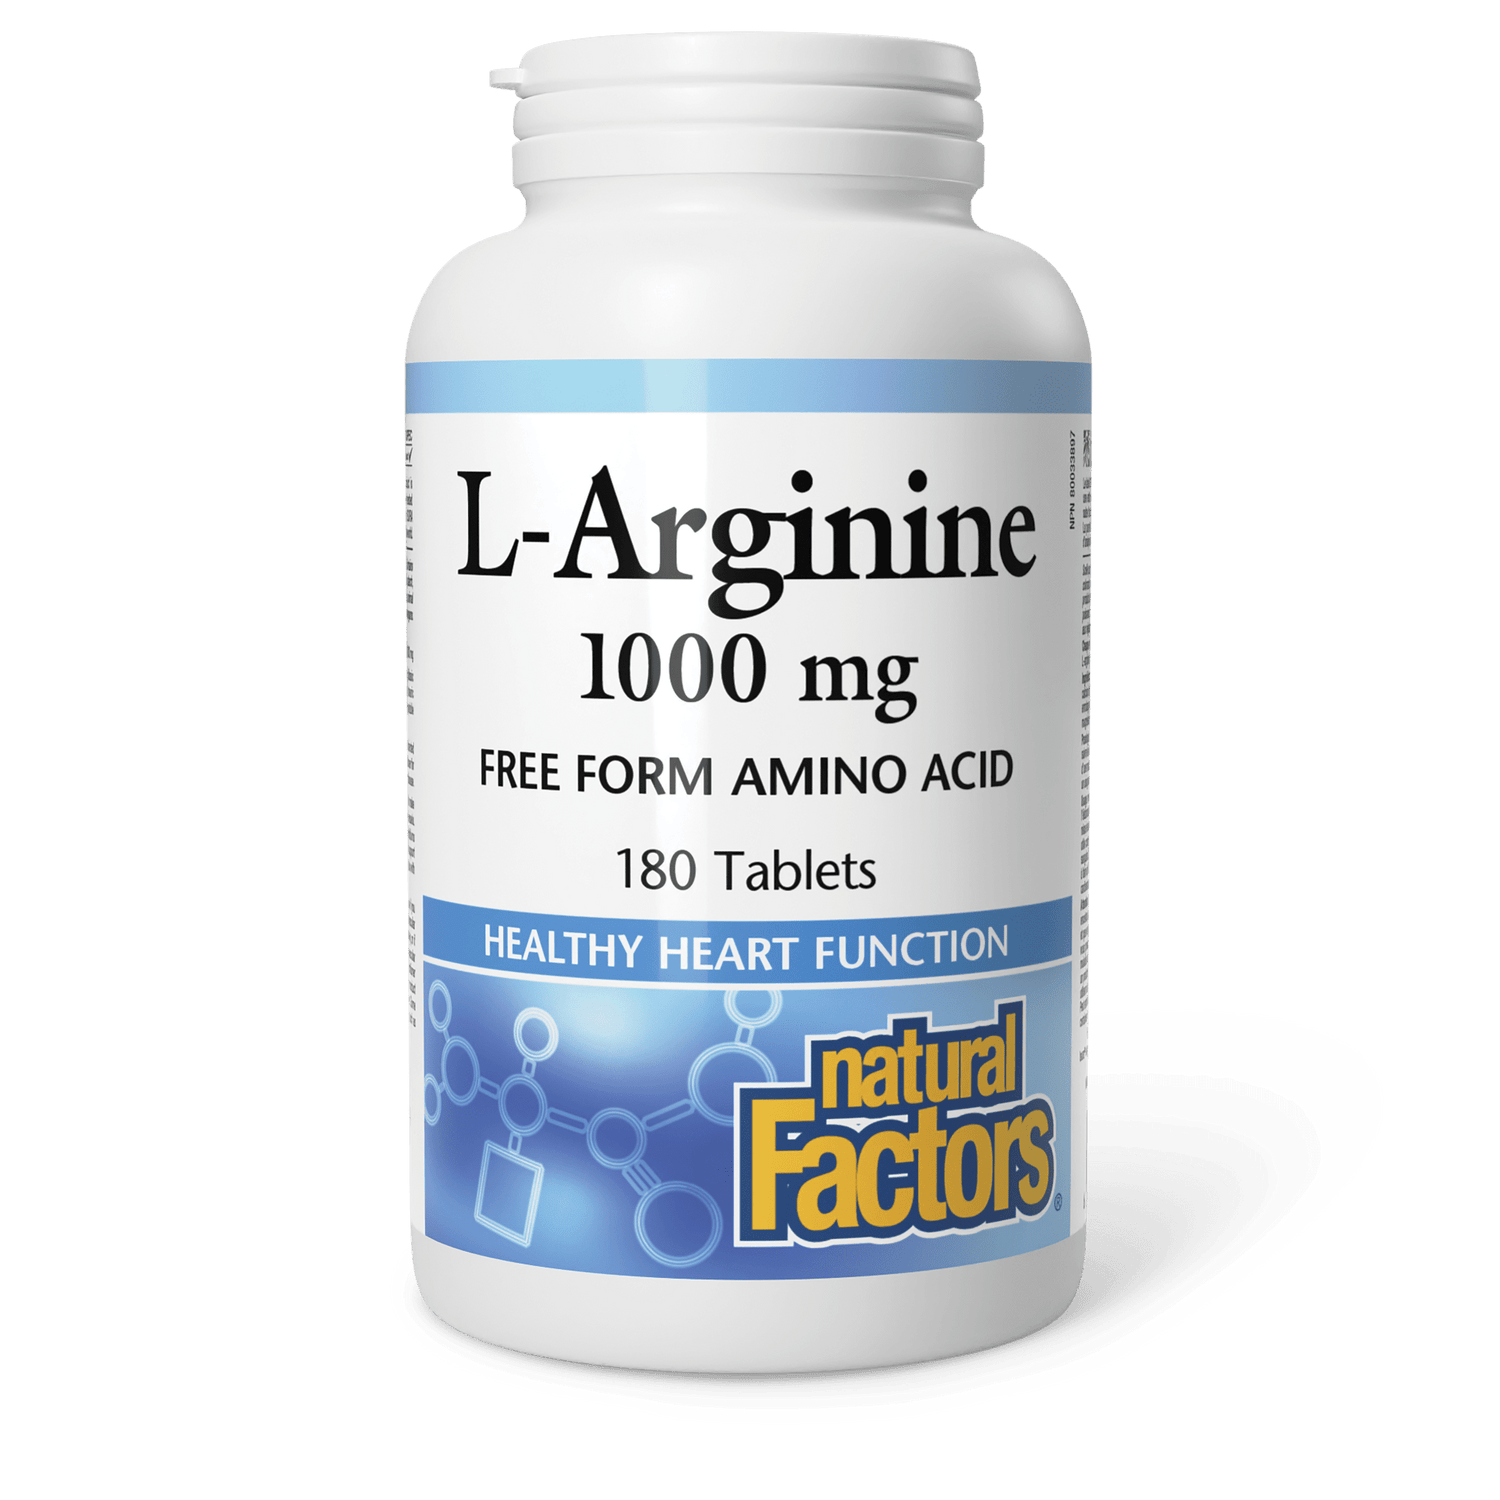 L-Arginine 1000 mg for Natural Factors |variant|hi-res|2856